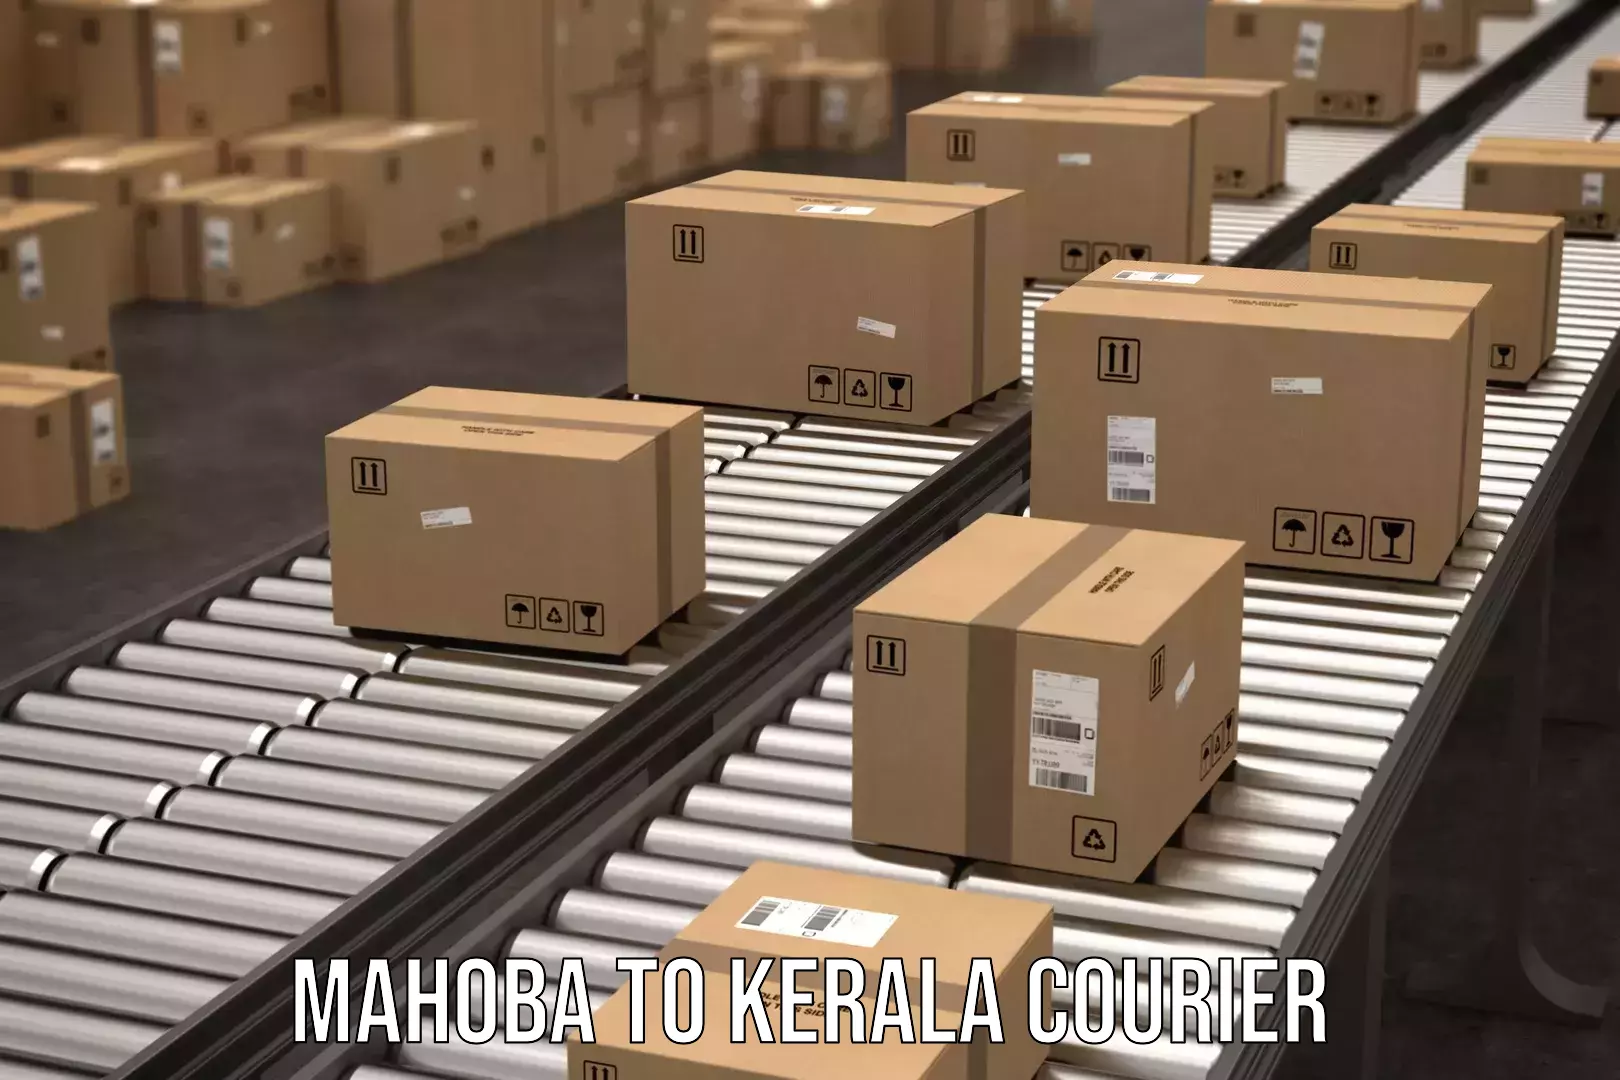 Express courier facilities Mahoba to Kozhencherry